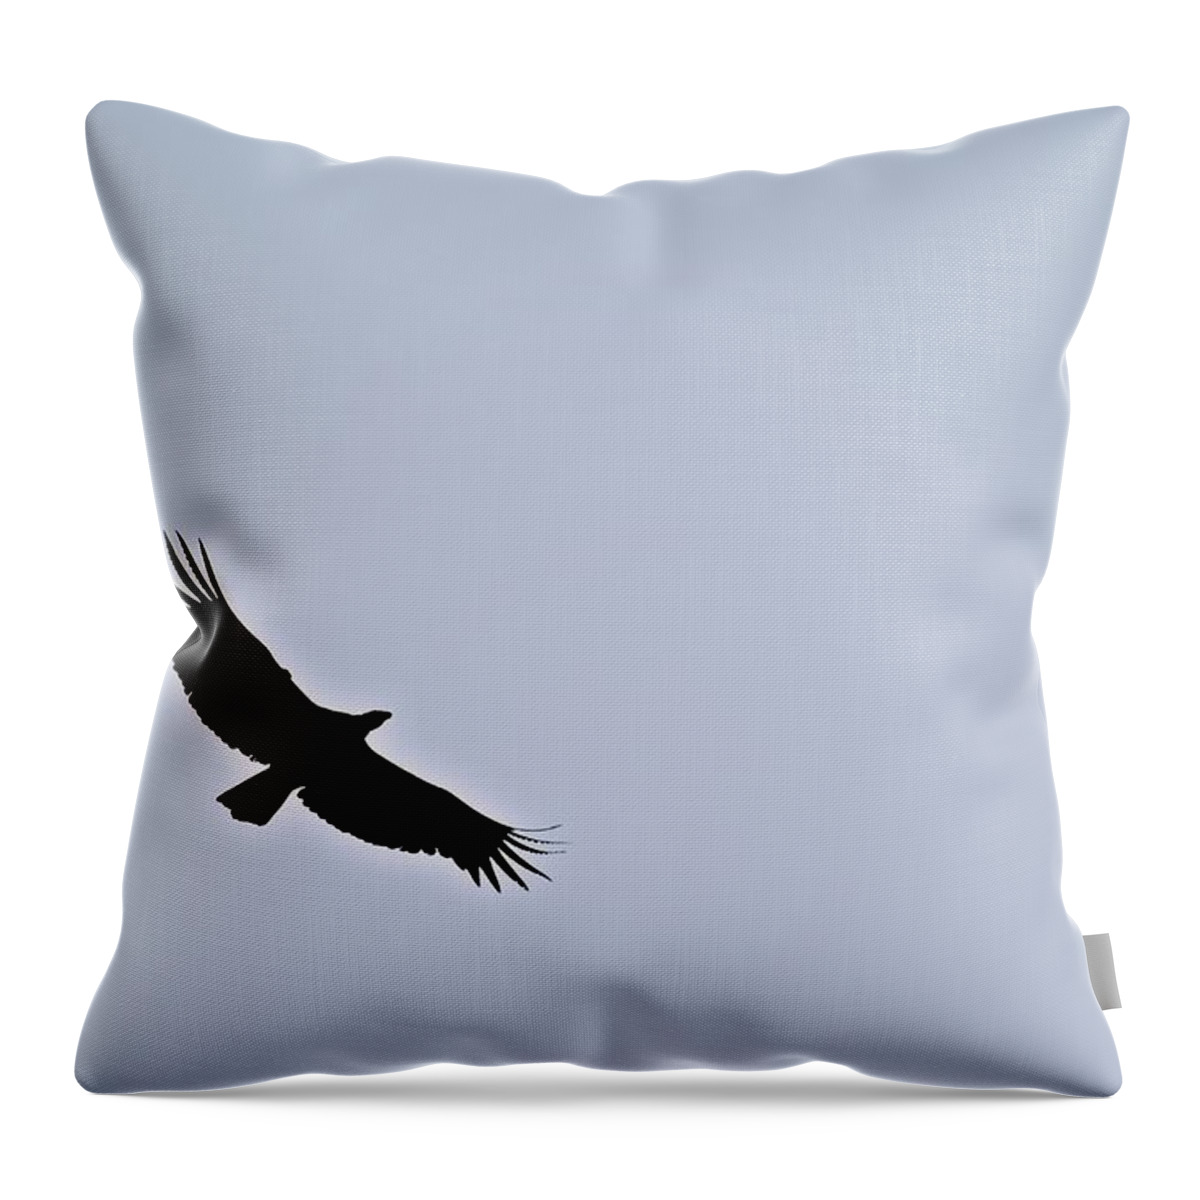 California Condor Throw Pillow featuring the photograph California Condor by Eric Tressler